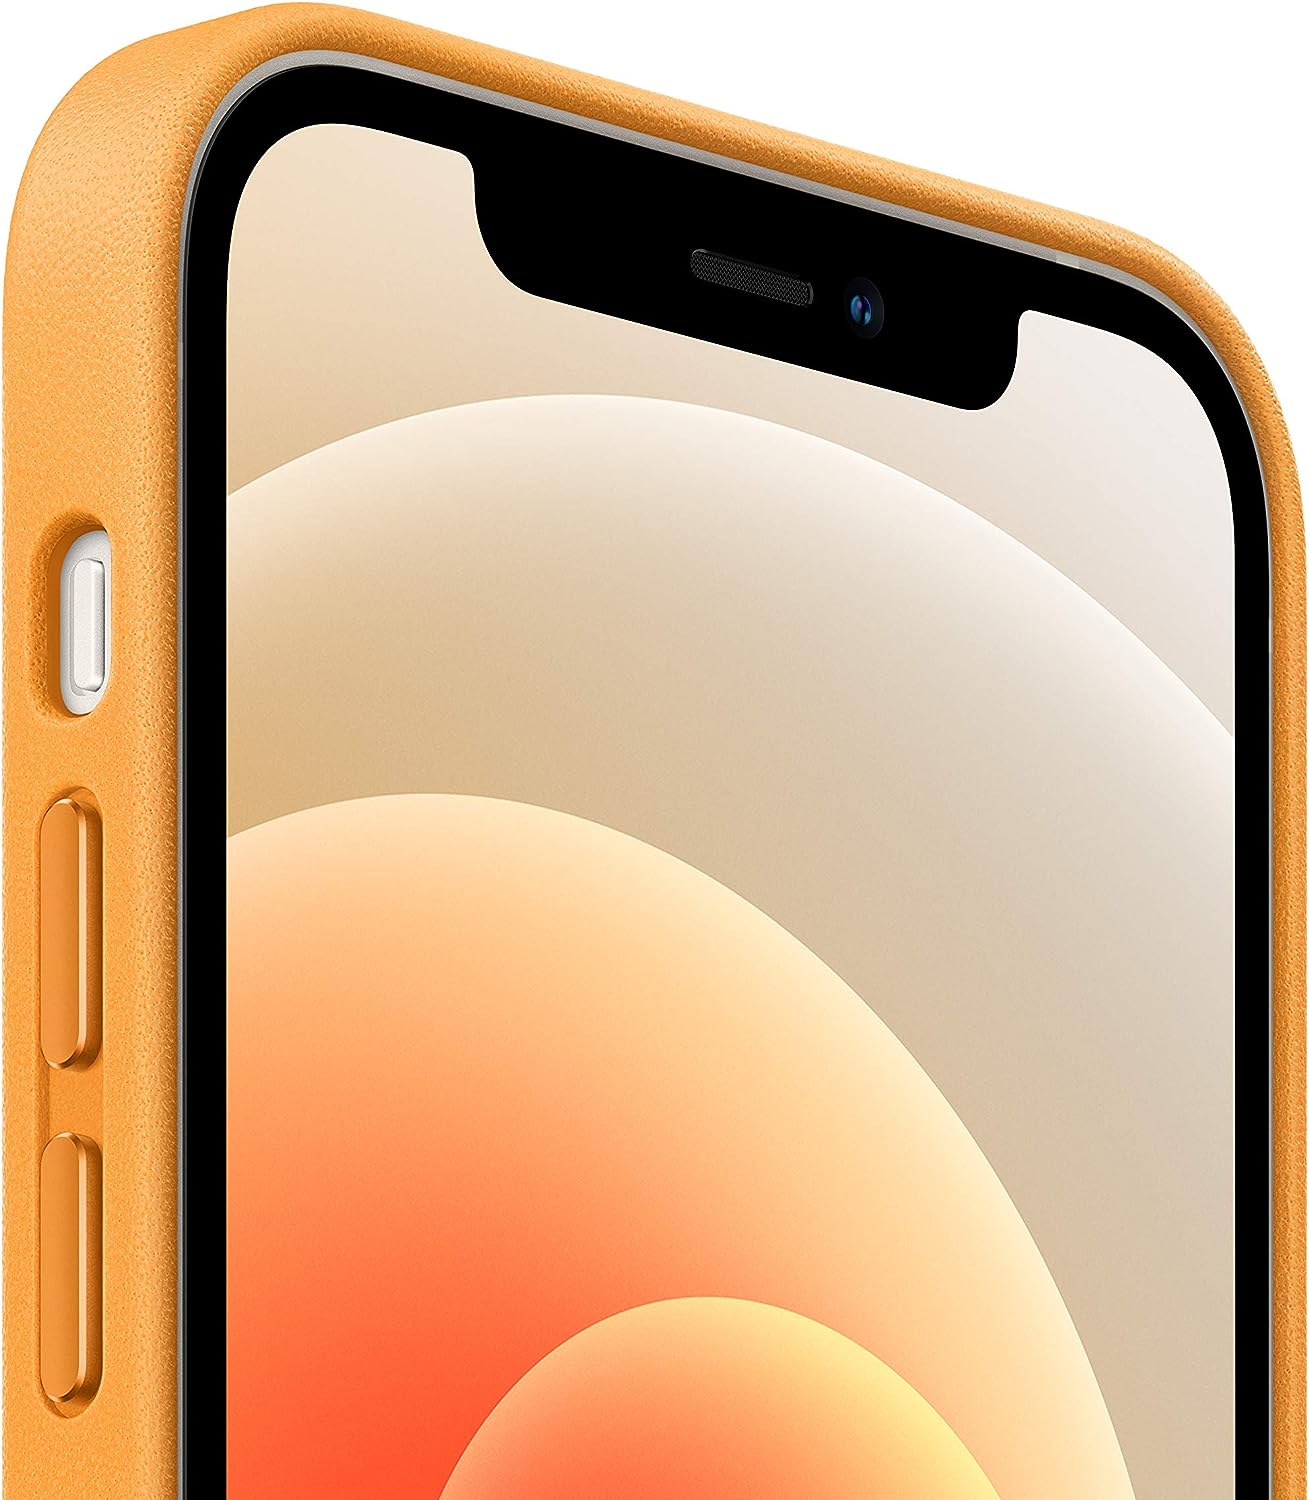 حافظة حماية لهاتف iPhone 12 جلدية من Apple بتقنية MagSafe لهاتف iPhone 12 Mini - كاليفورنيا بوبي